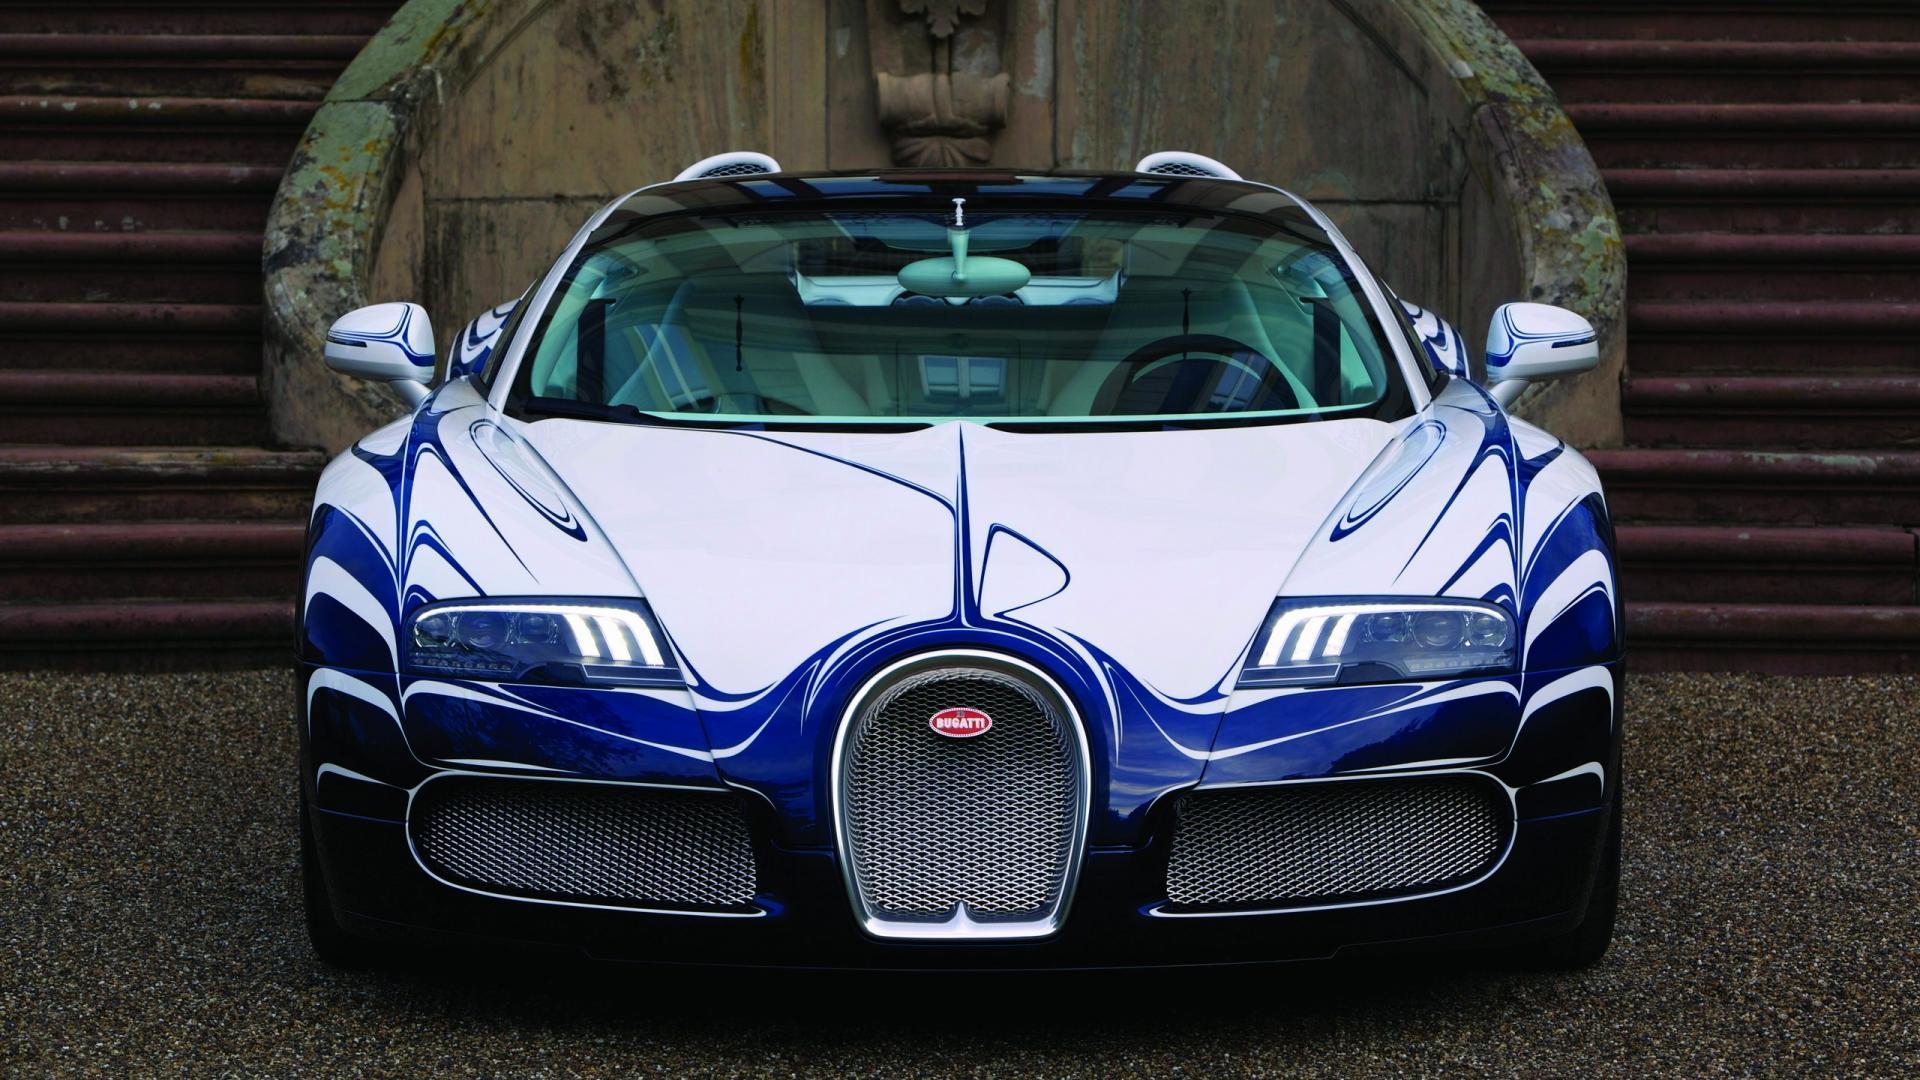 Picture Bugatti Veyron Super Sports Cars